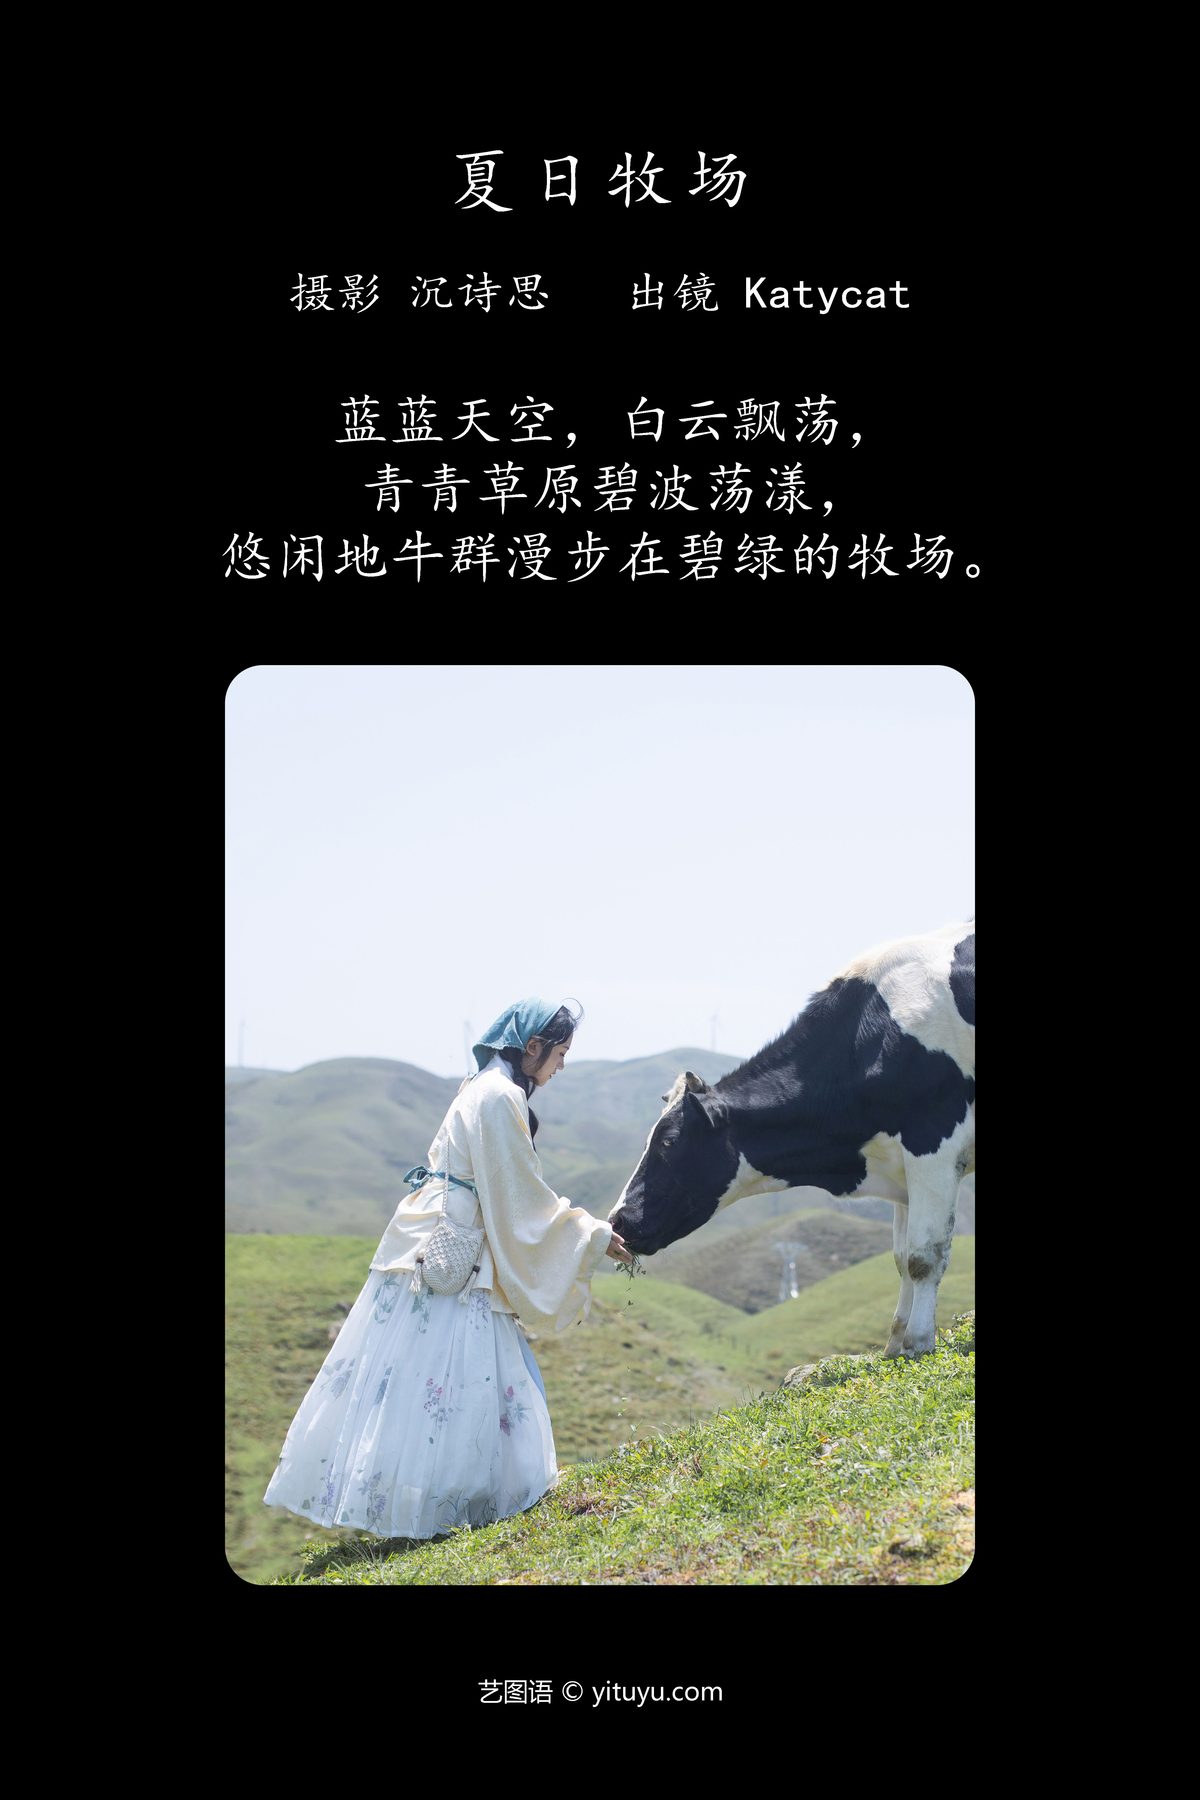 YiTuYu艺图语 Vol 4381 Shen Shi Si 0002 9714467657.jpg